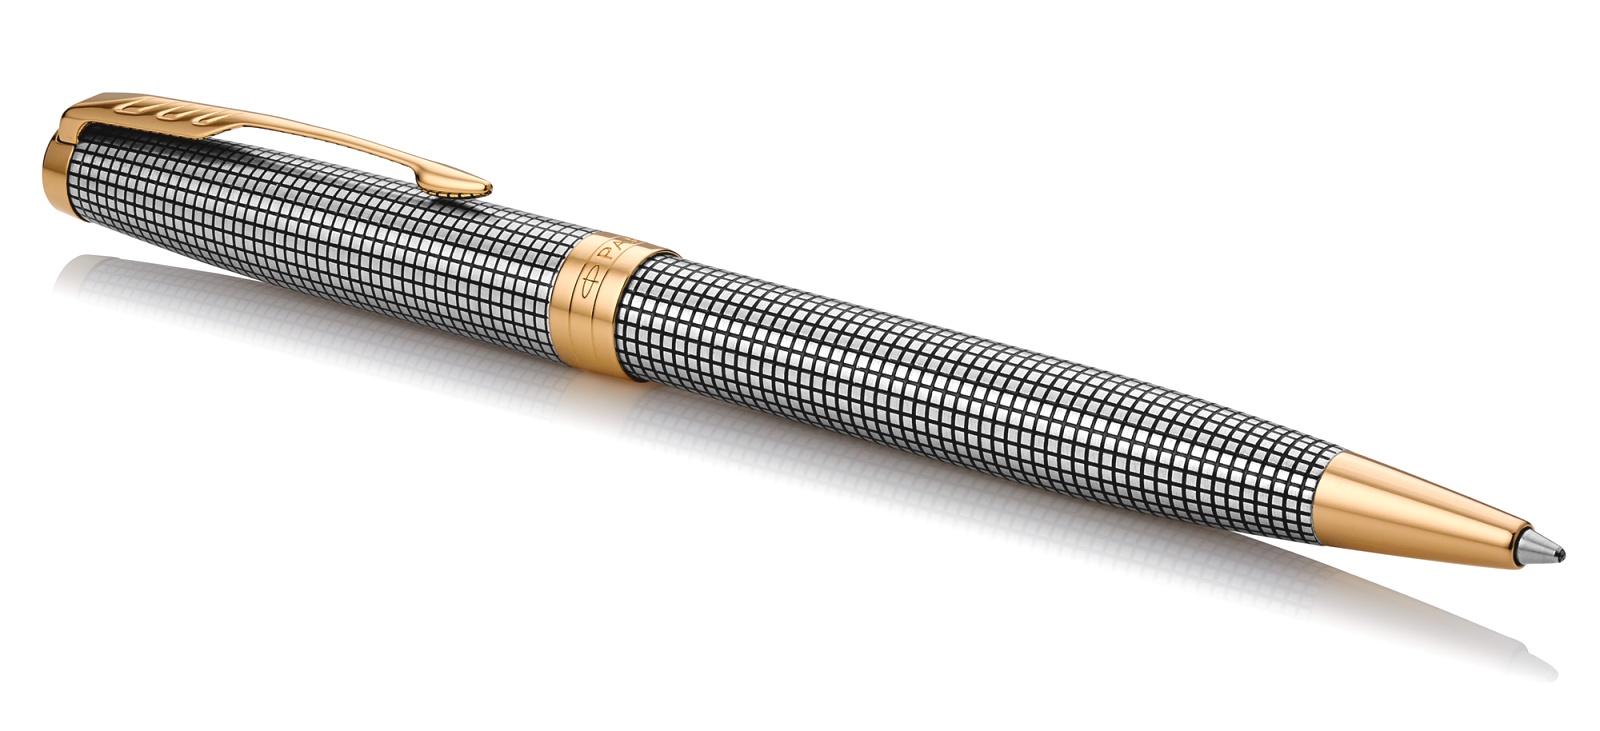  Шариковая ручка Parker Sonnet Premium K534, Cisele GT, фото 2